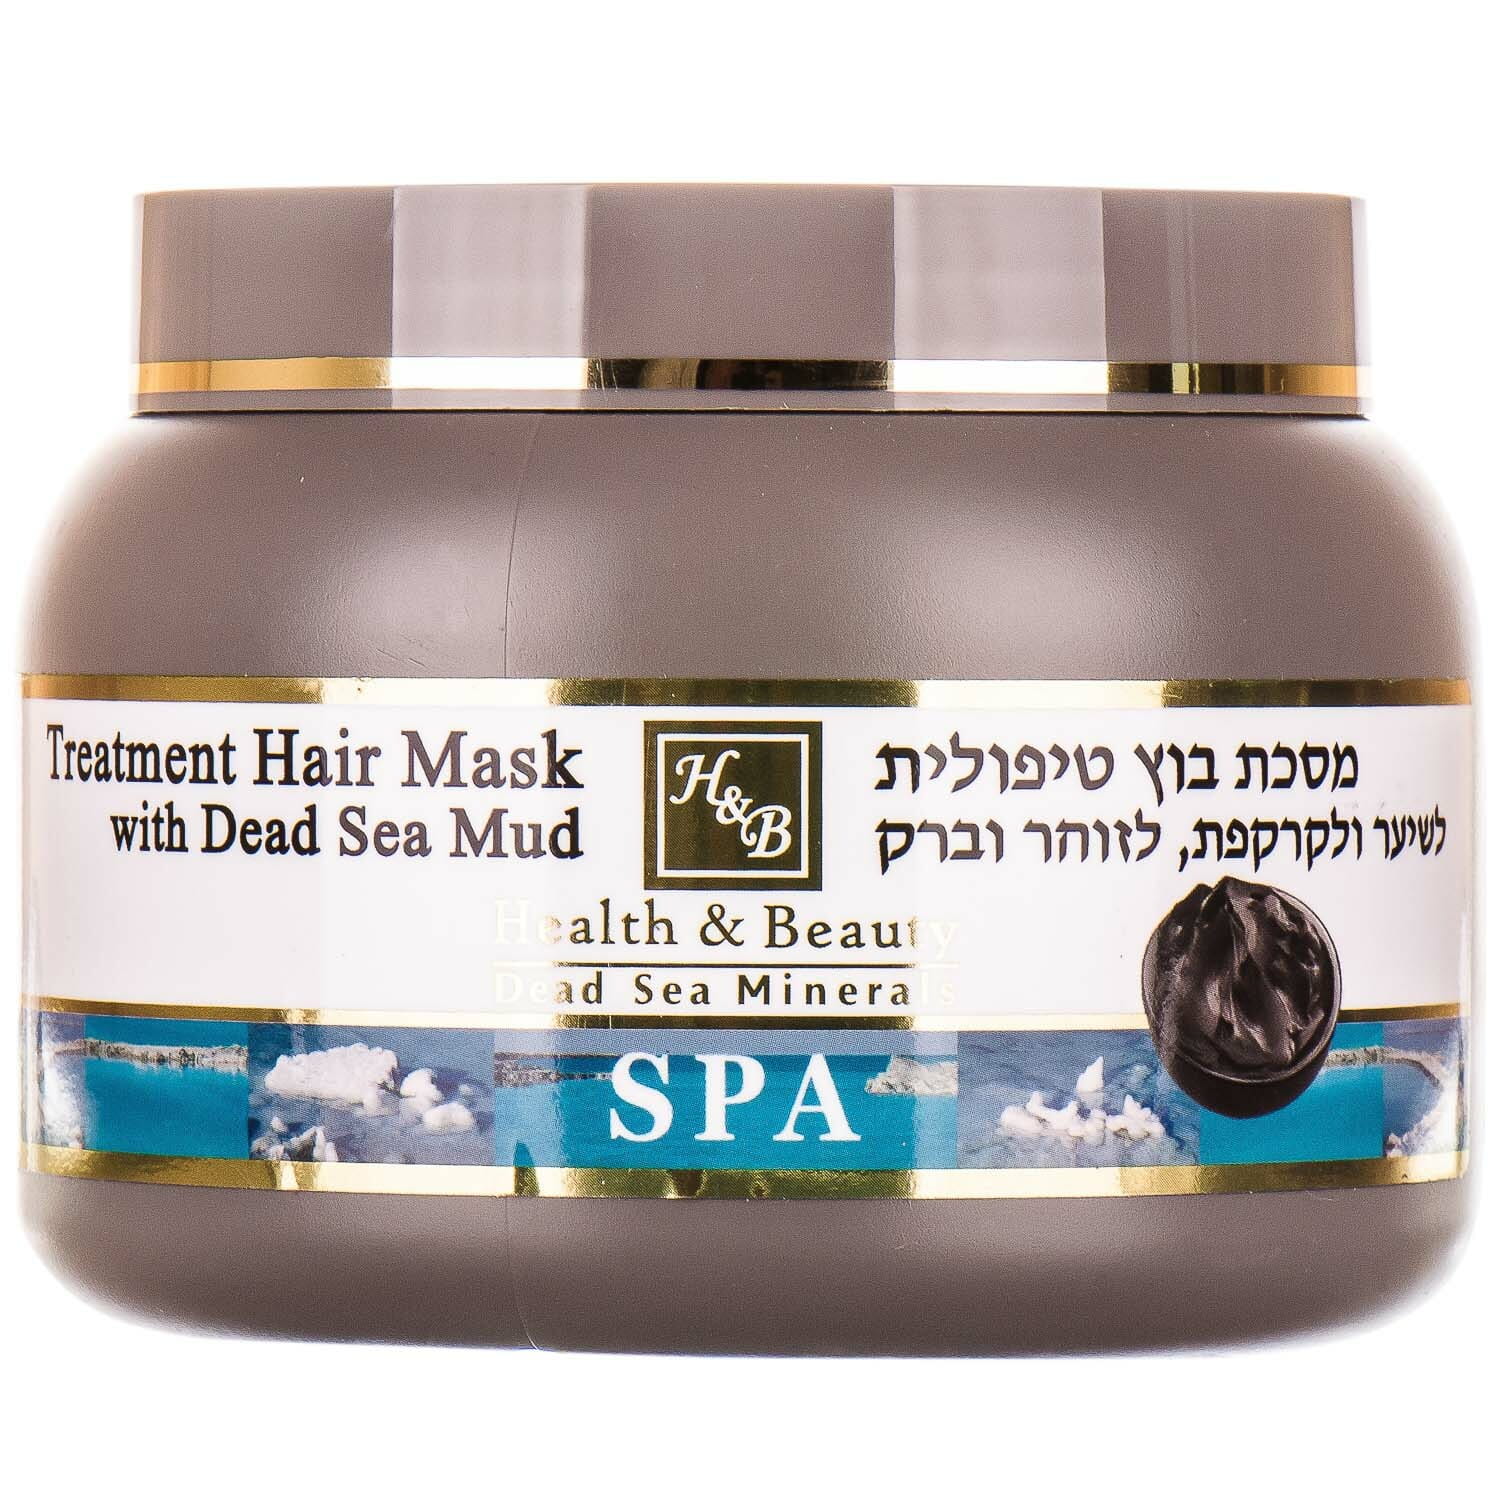 Health-beauty маска лечебная для волос с грязью мертвого моря